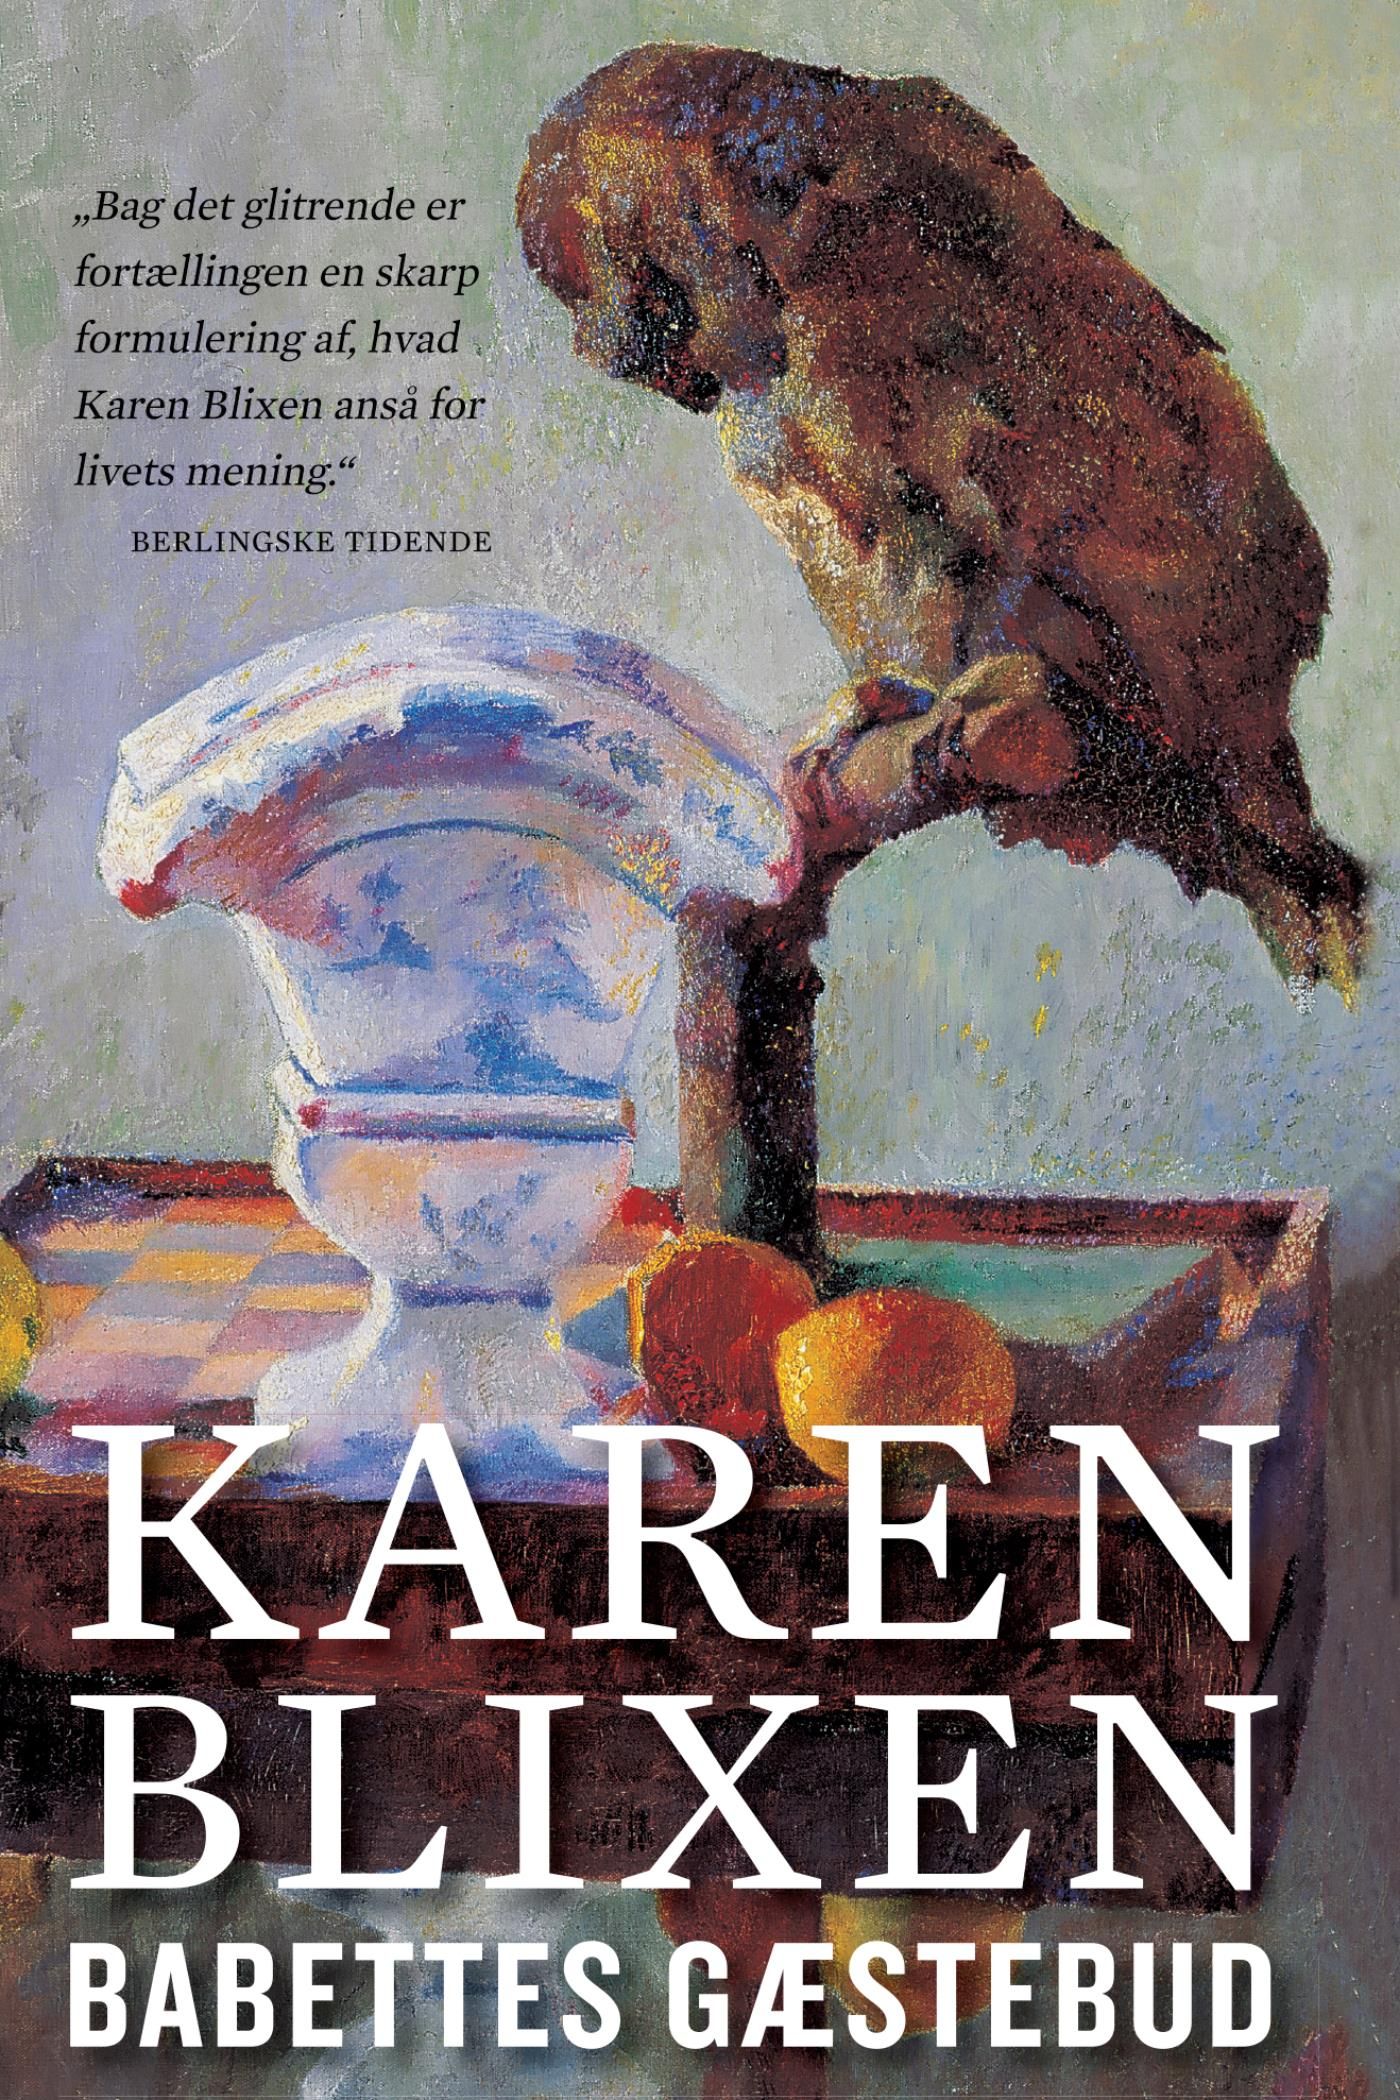 Babettes gæstebud, eBook by Karen Blixen